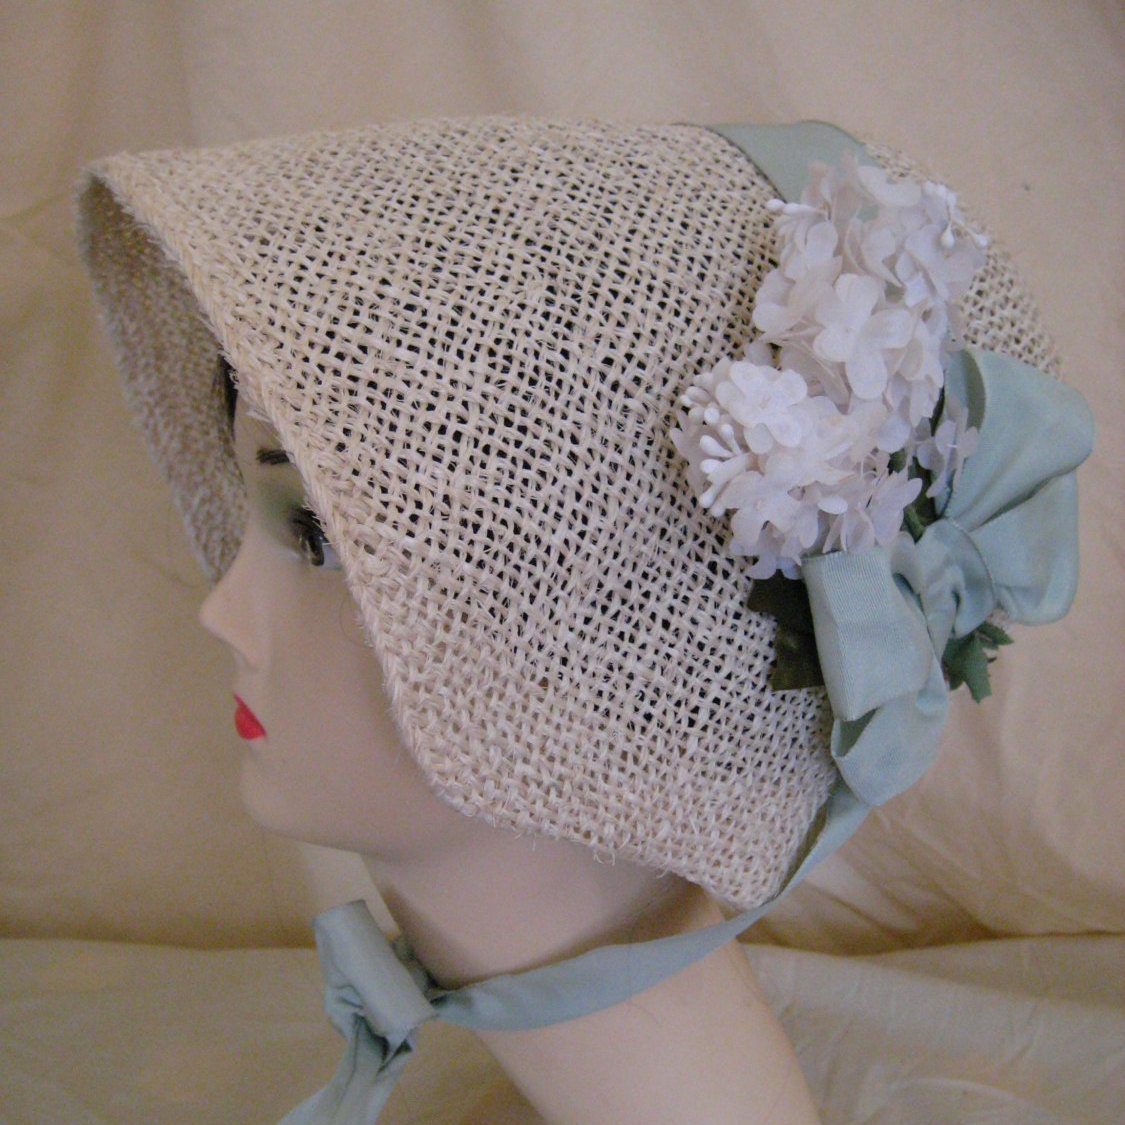 Regency/Victorian Straw Bonnet. Jane Austen. by RegencyRegalia